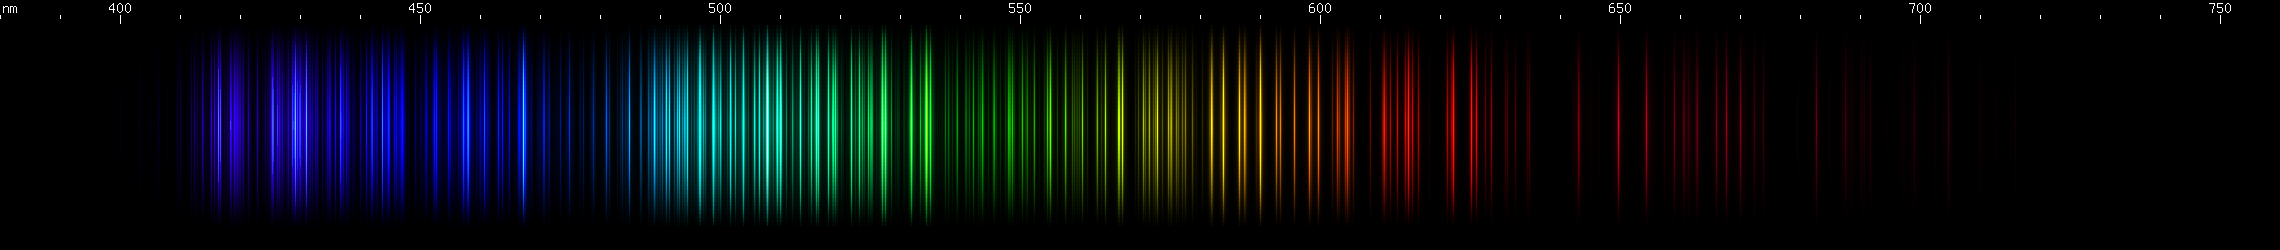 Spectral lines of Niobium.